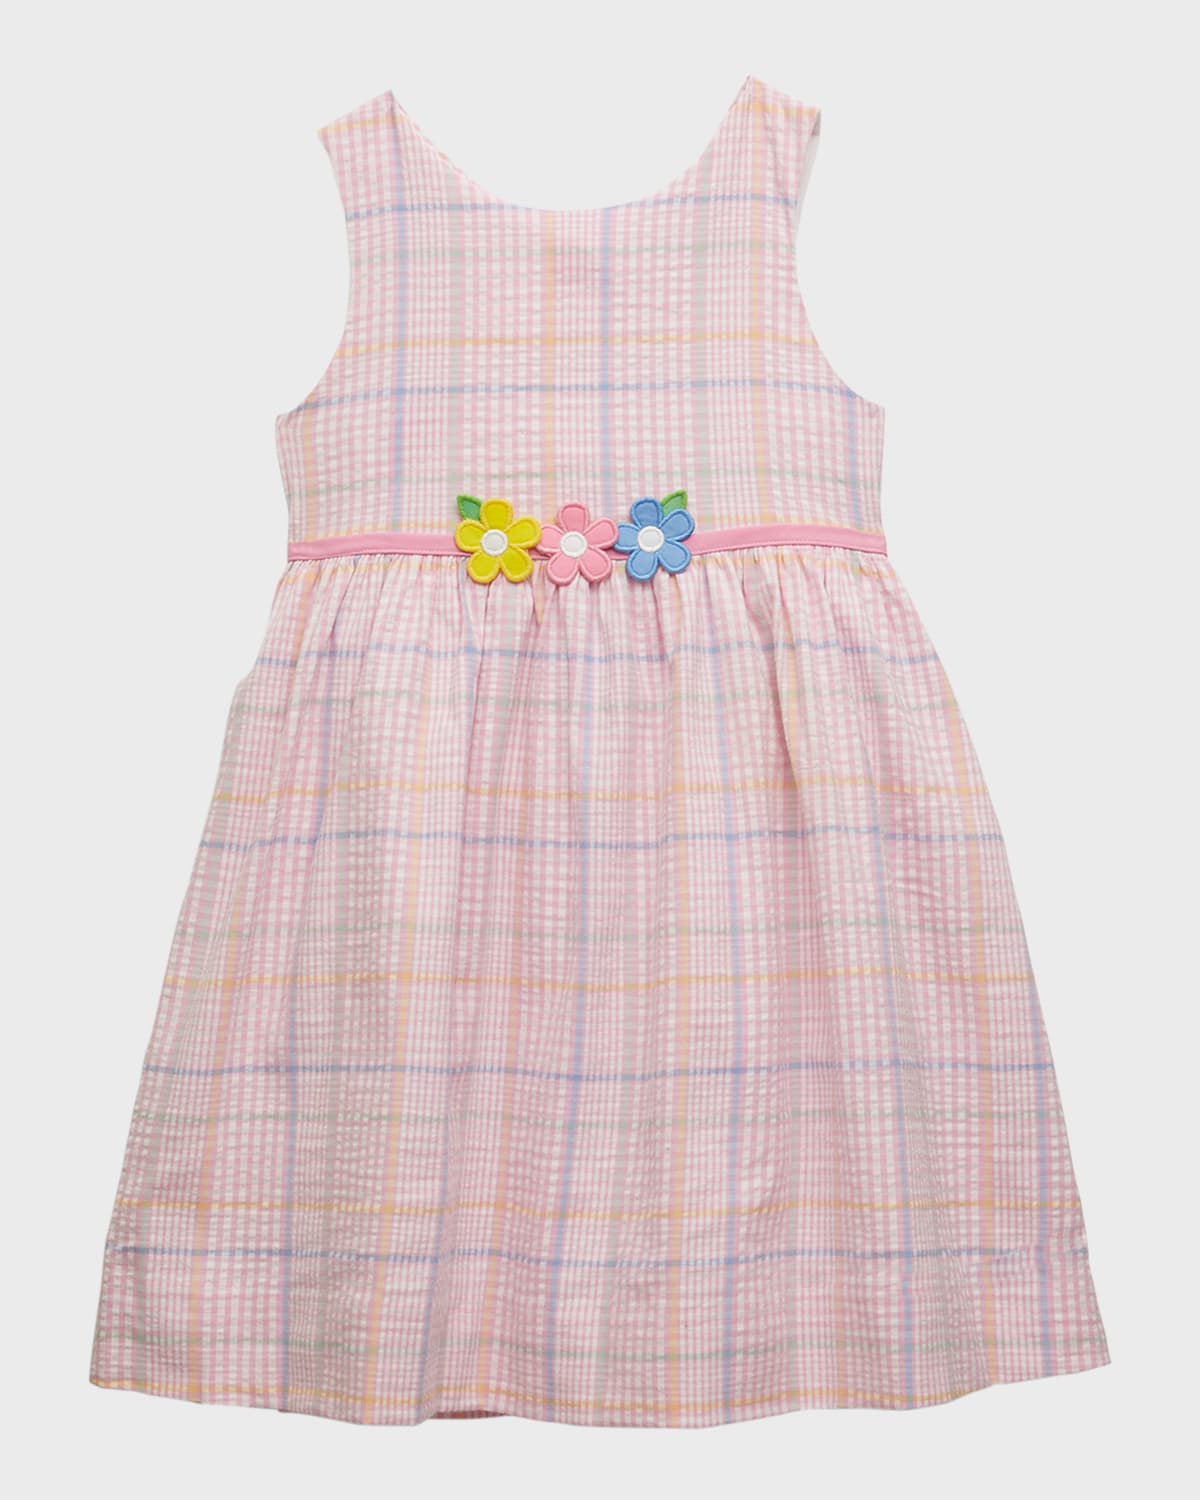 Florence Eiseman Babies' Girl's Plaid-print Seersucker Dress In Pink/multi